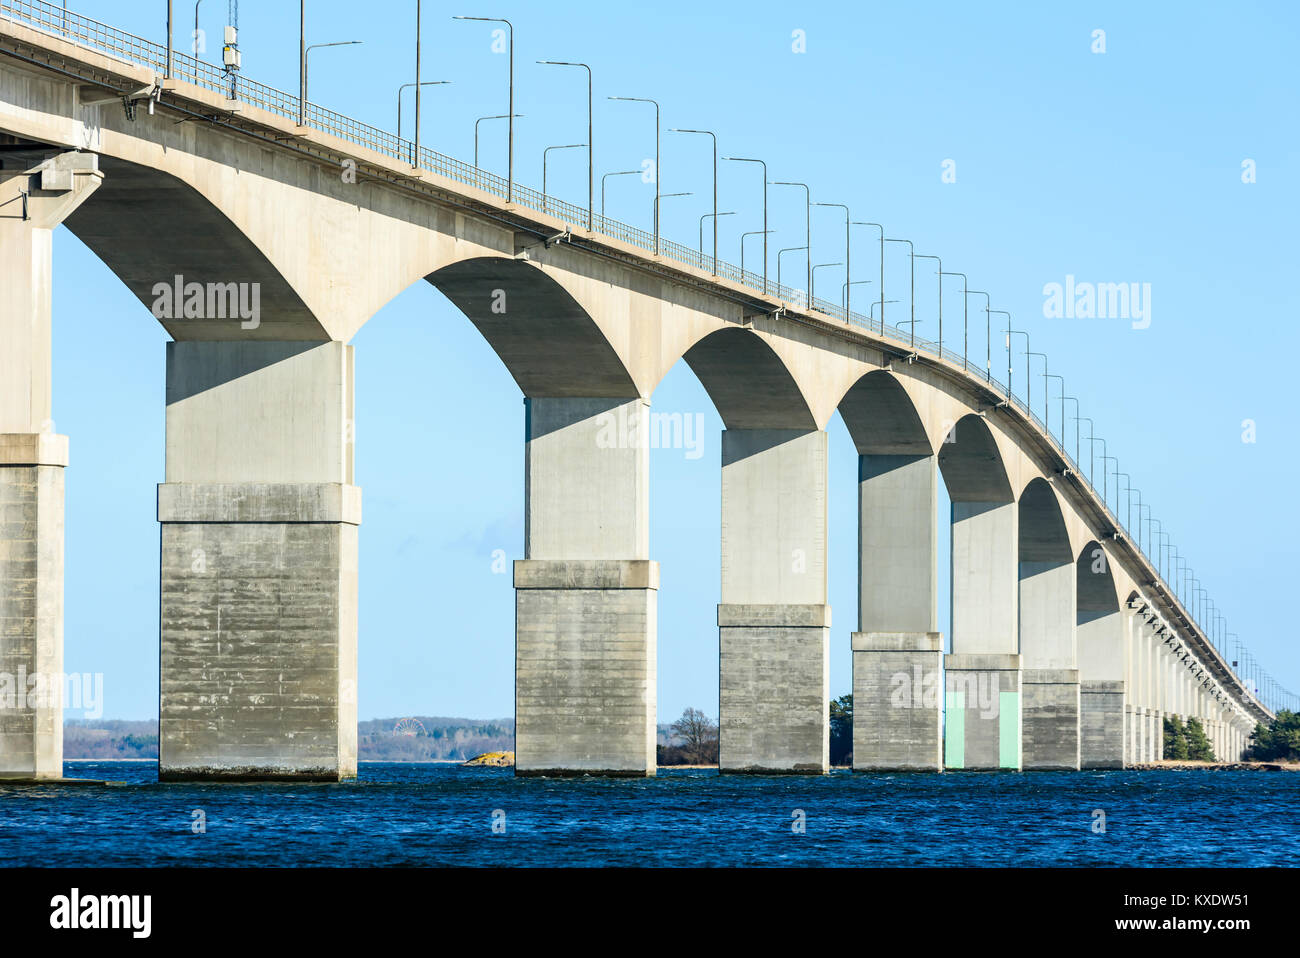 Betonbrücke über Wasser. Graue Säulen tragen das Gewicht der Struktur. Wesentlicher Bestandteil der Infrastruktur und Verbindung der Insel Oland zum Festland Sw Stockfoto